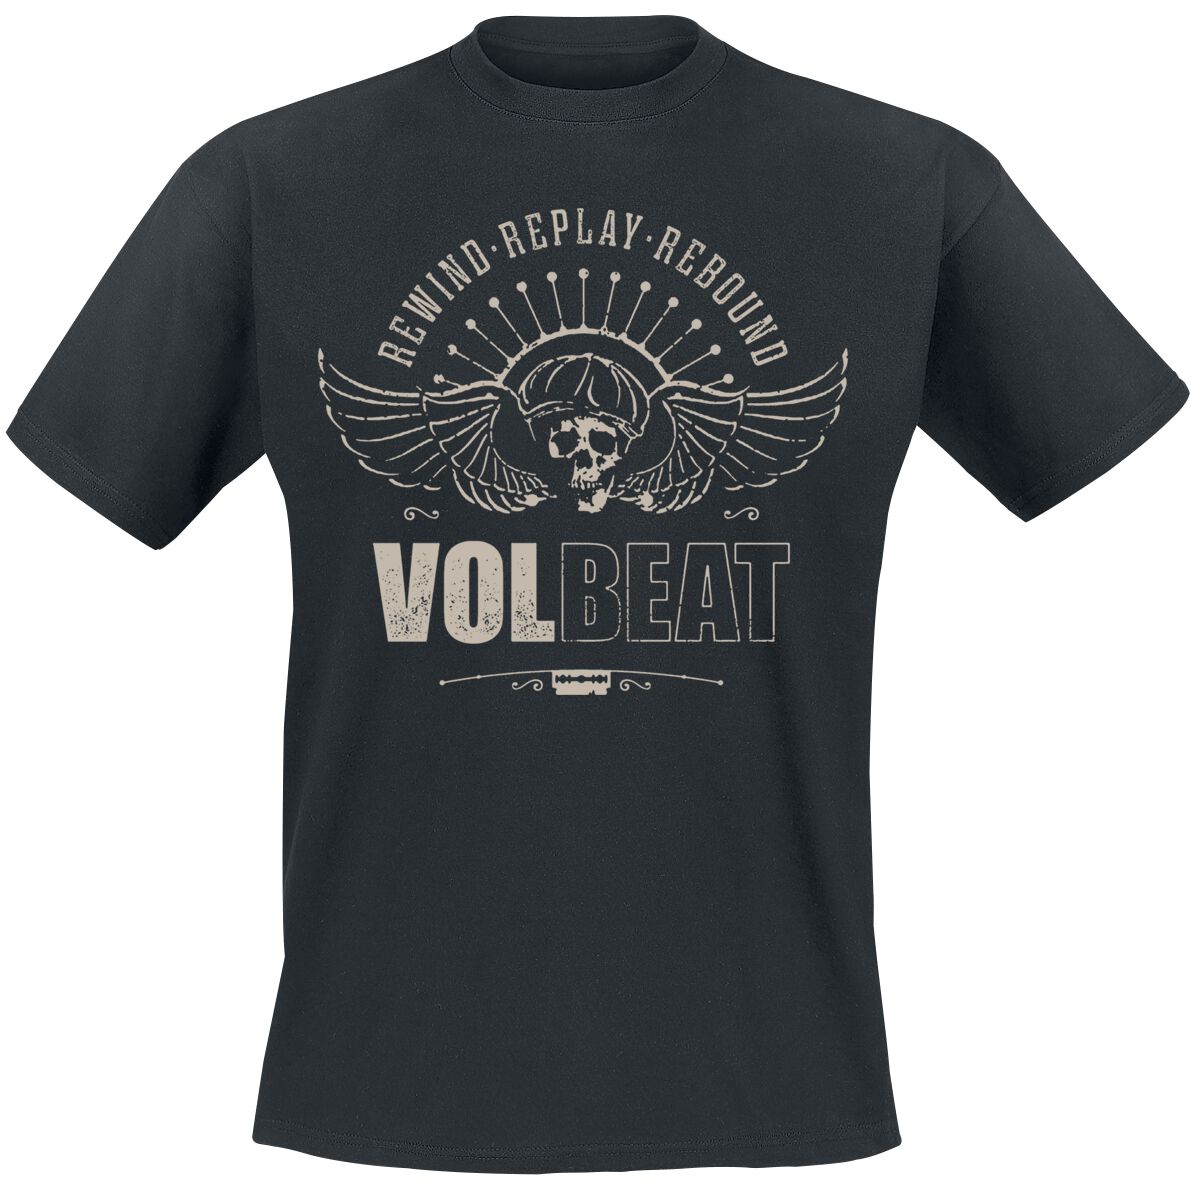 Volbeat T-Shirt - Skullwing - Rewind, Replay, Rebound - S bis 4XL - für Männer - Größe 4XL - schwarz  - EMP exklusives Merchandise!